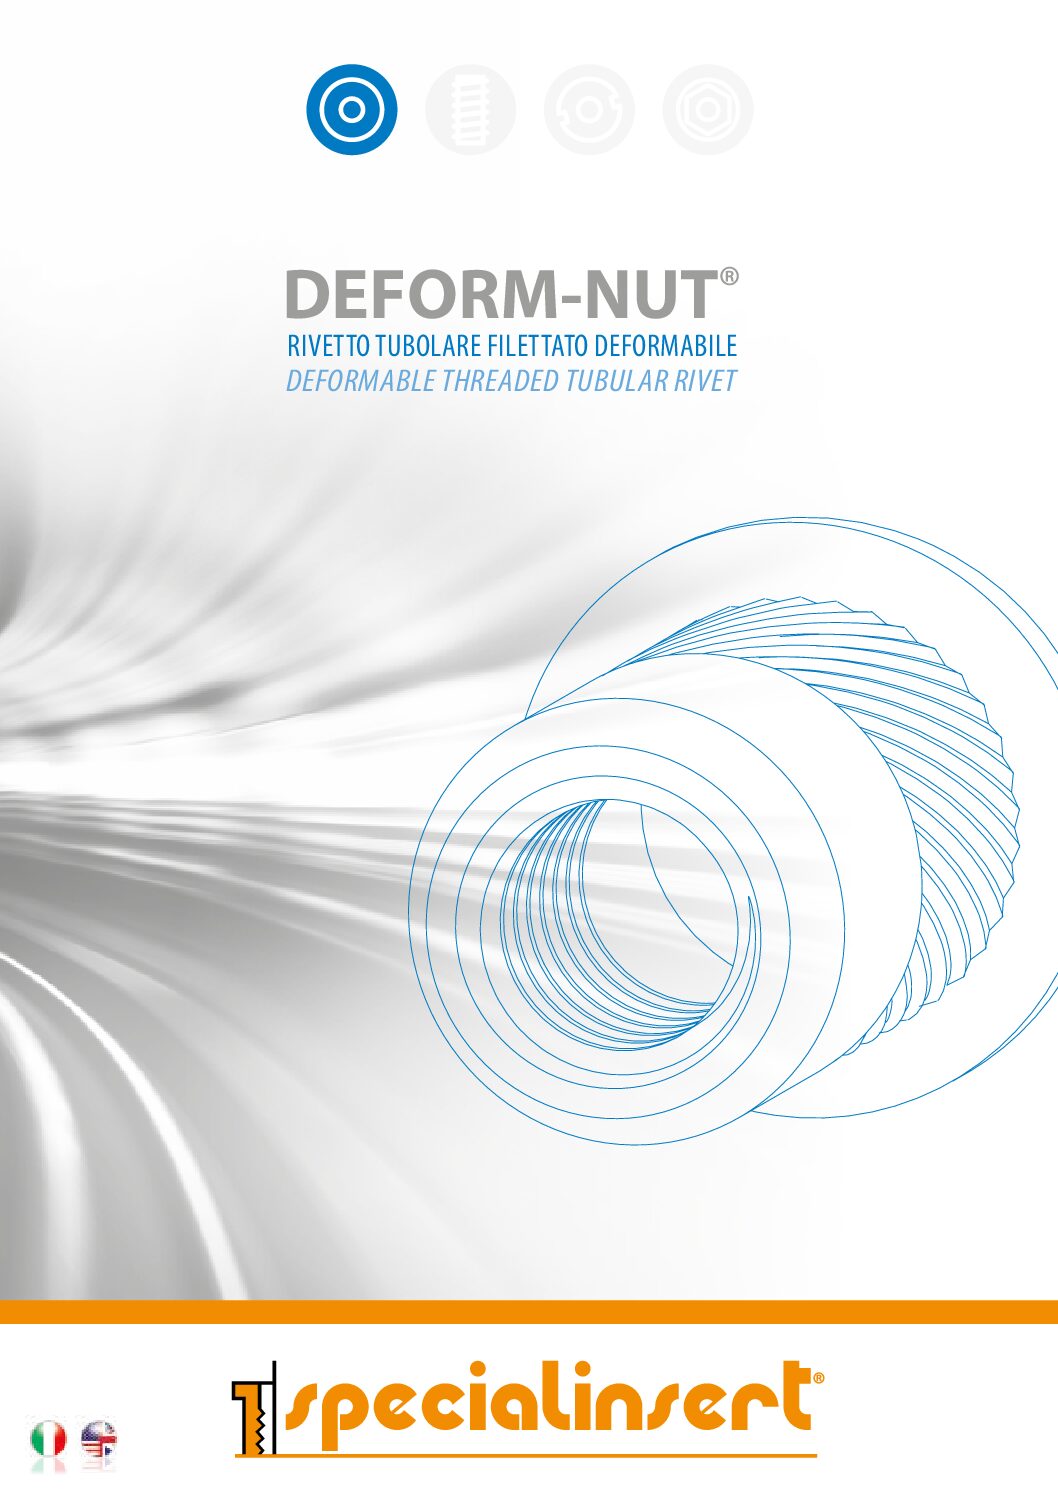 DEFORM-NUT® Deformable Threaded Tubular Rivet